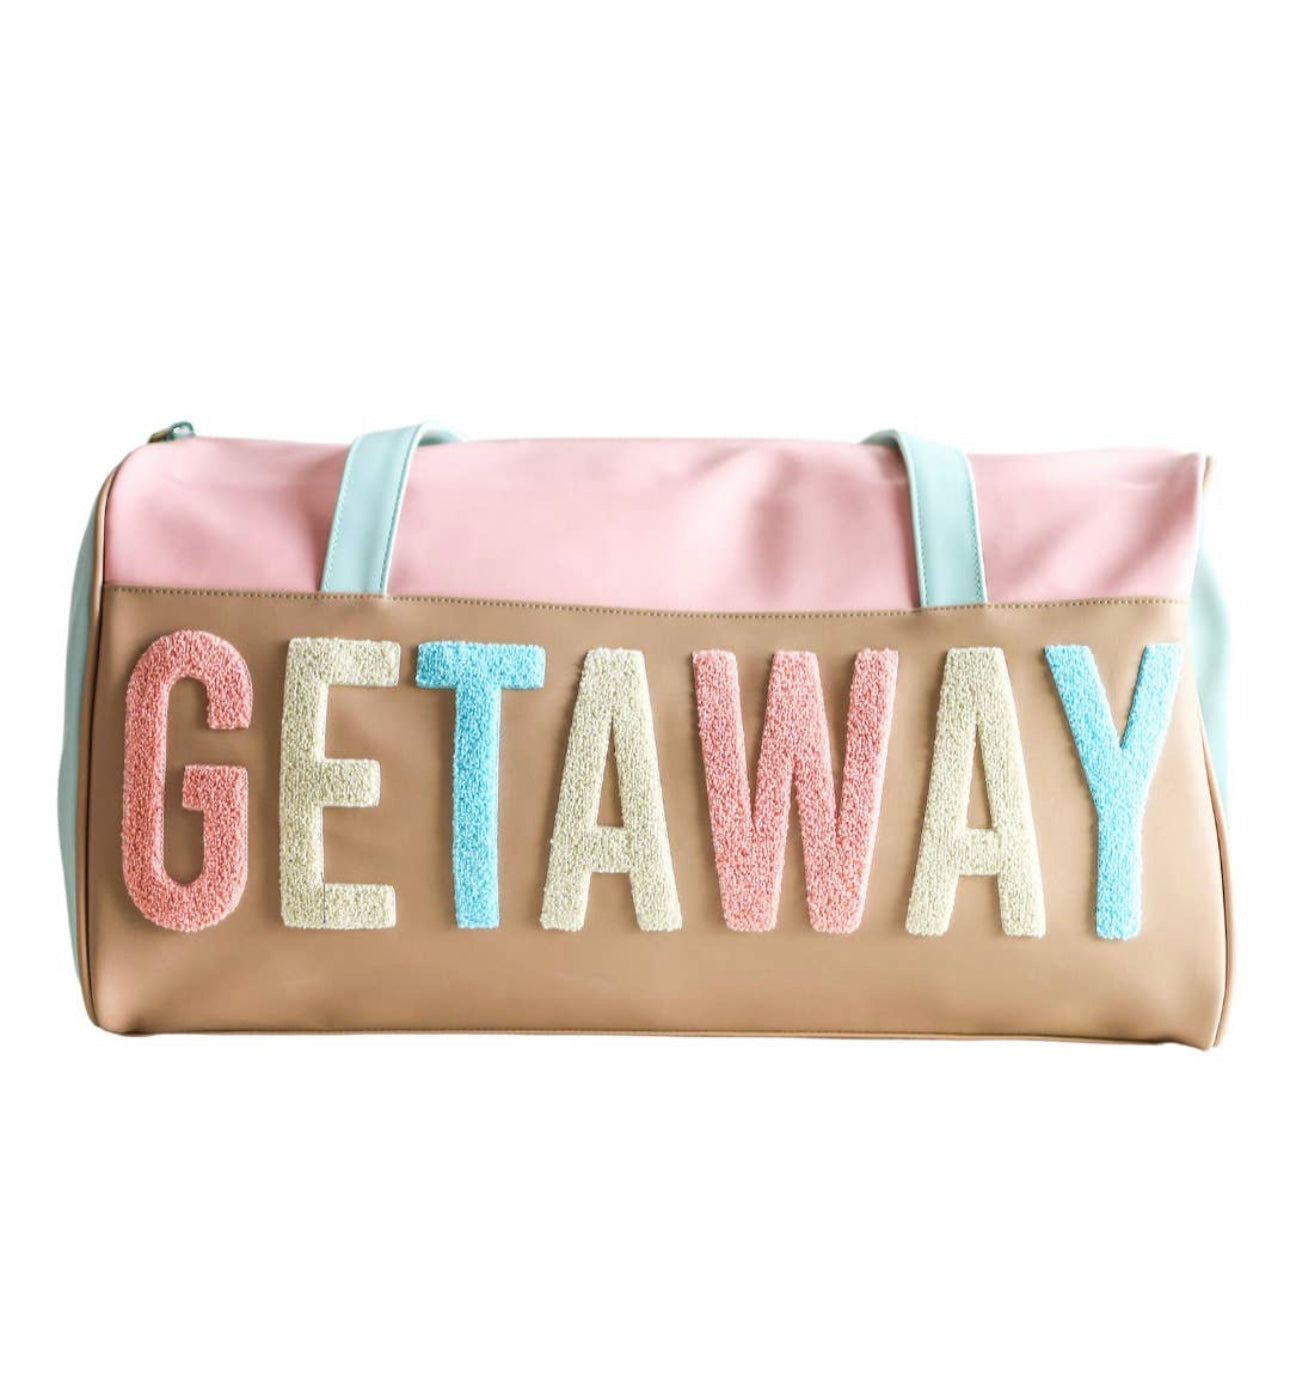 Getaway Duffle Bag